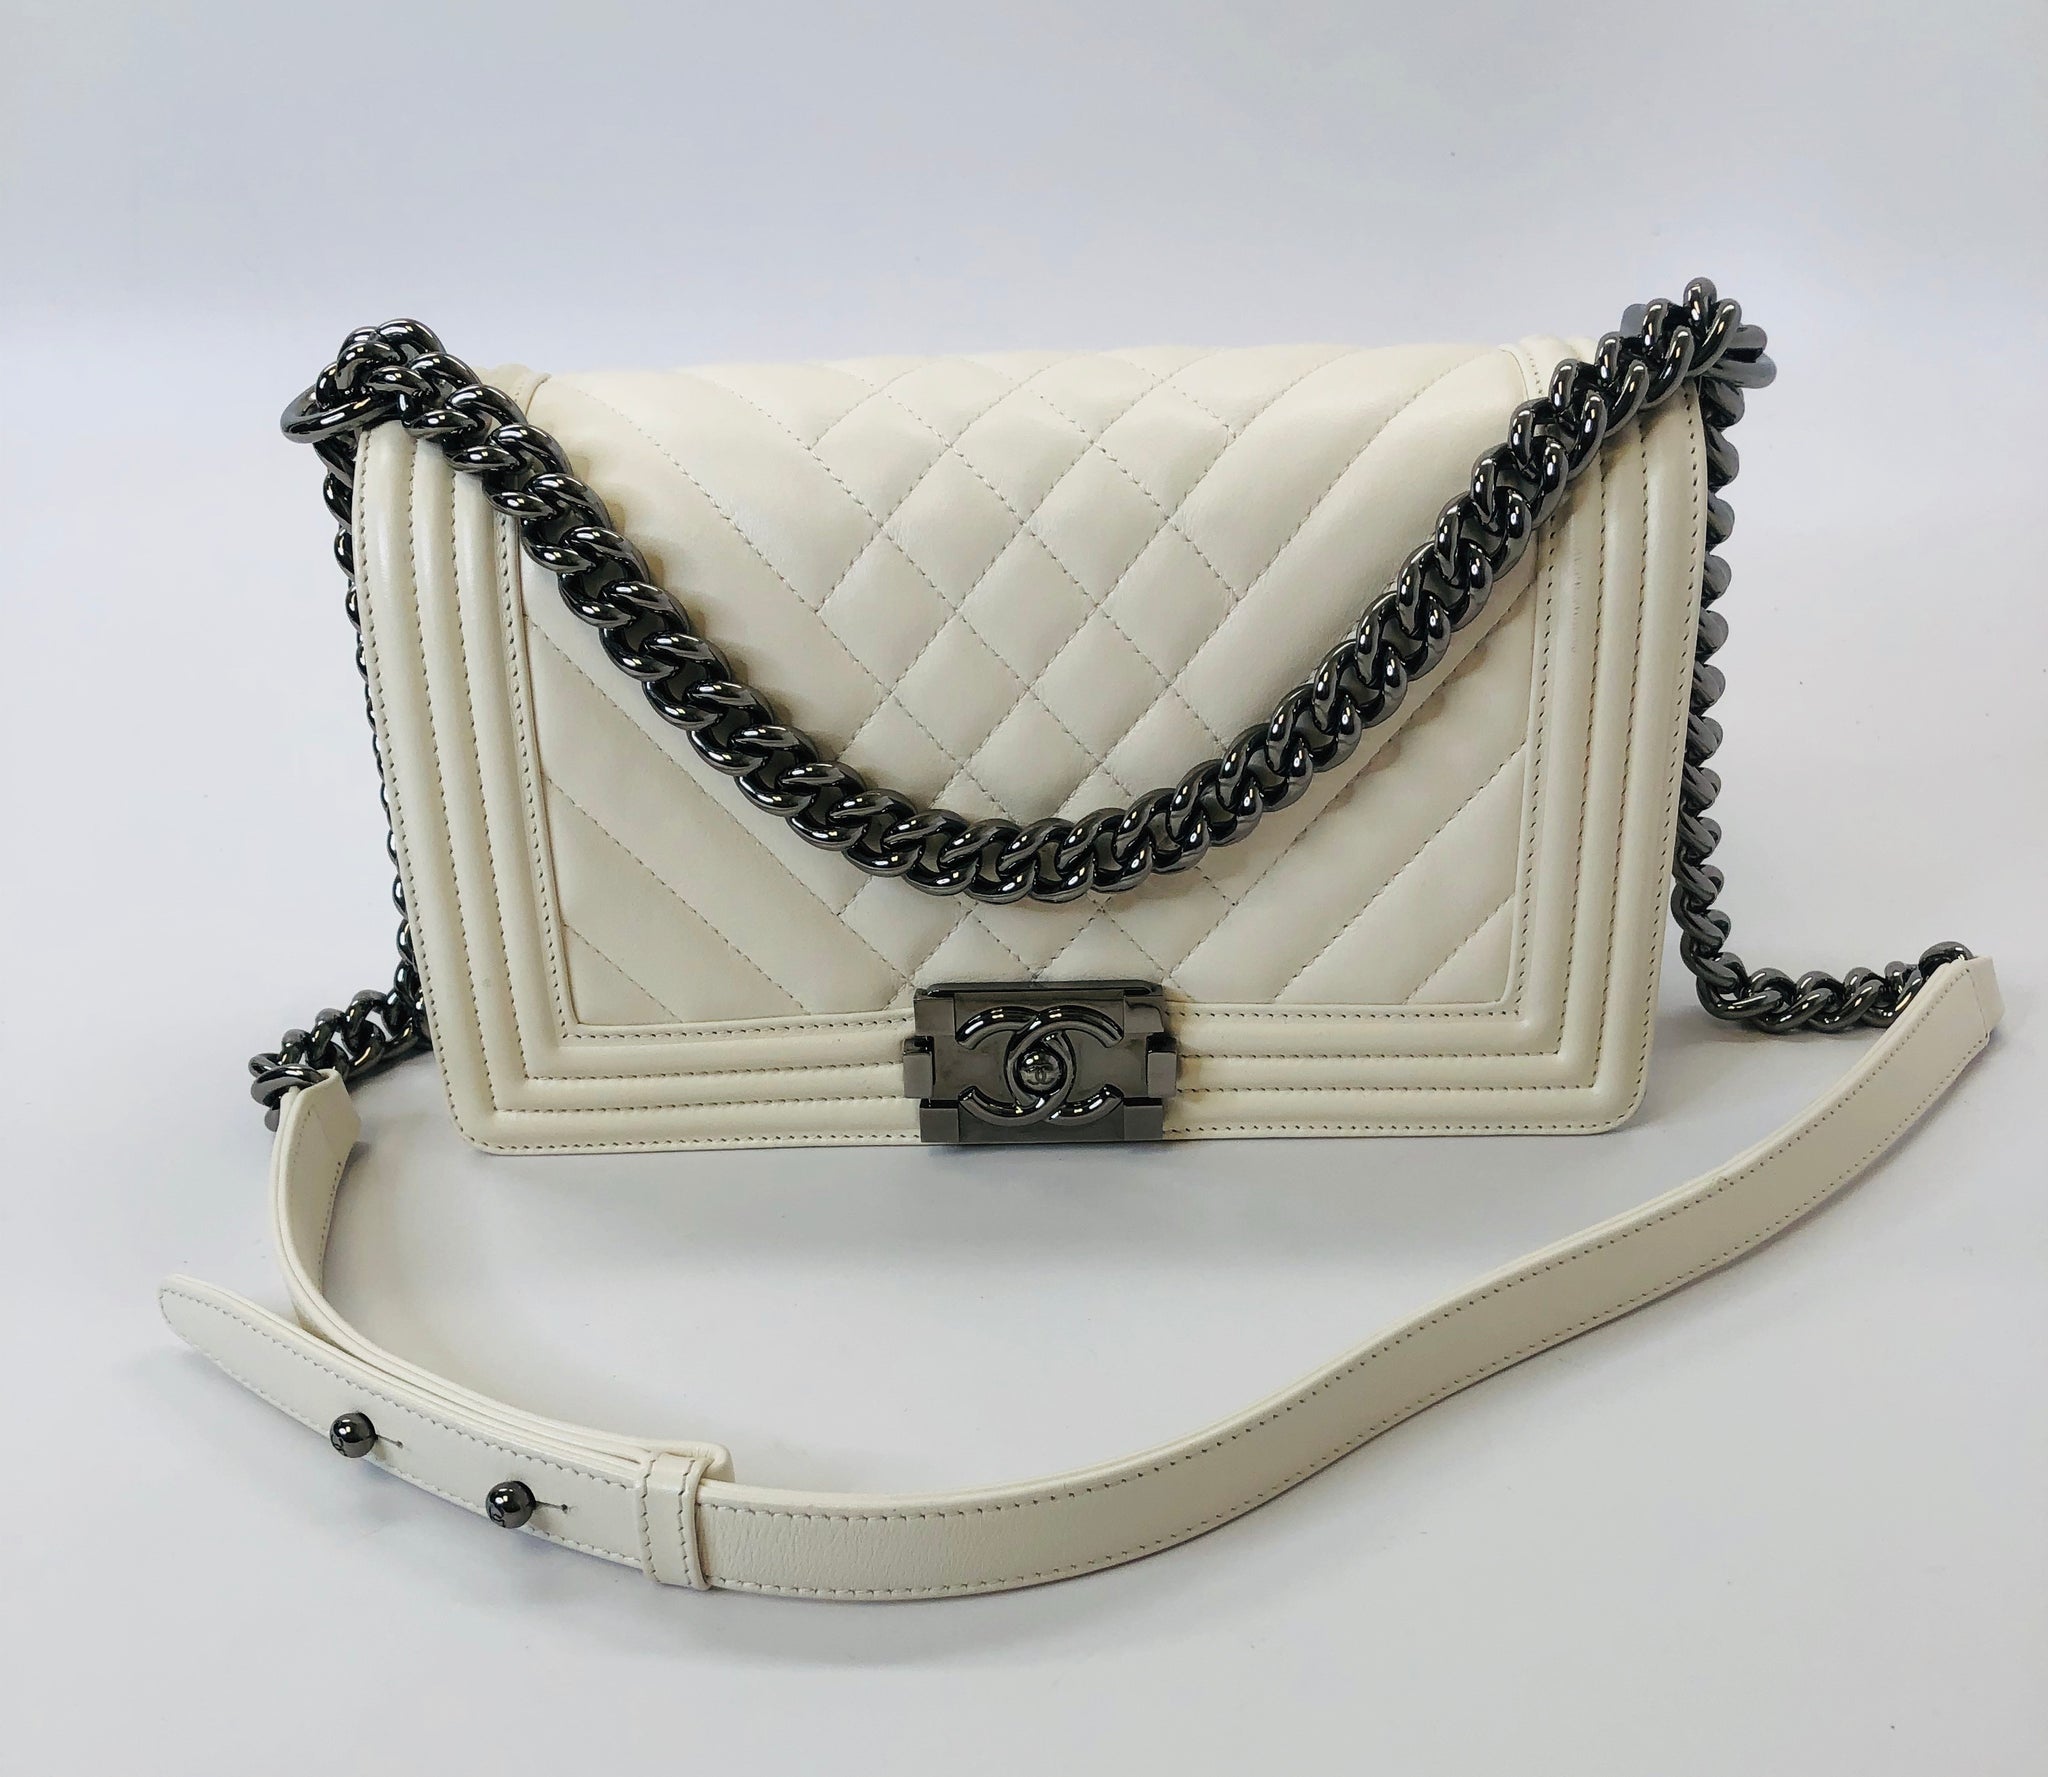 Chanel Grey Calfskin Whipstitch New Medium Boy Bag, myGemma